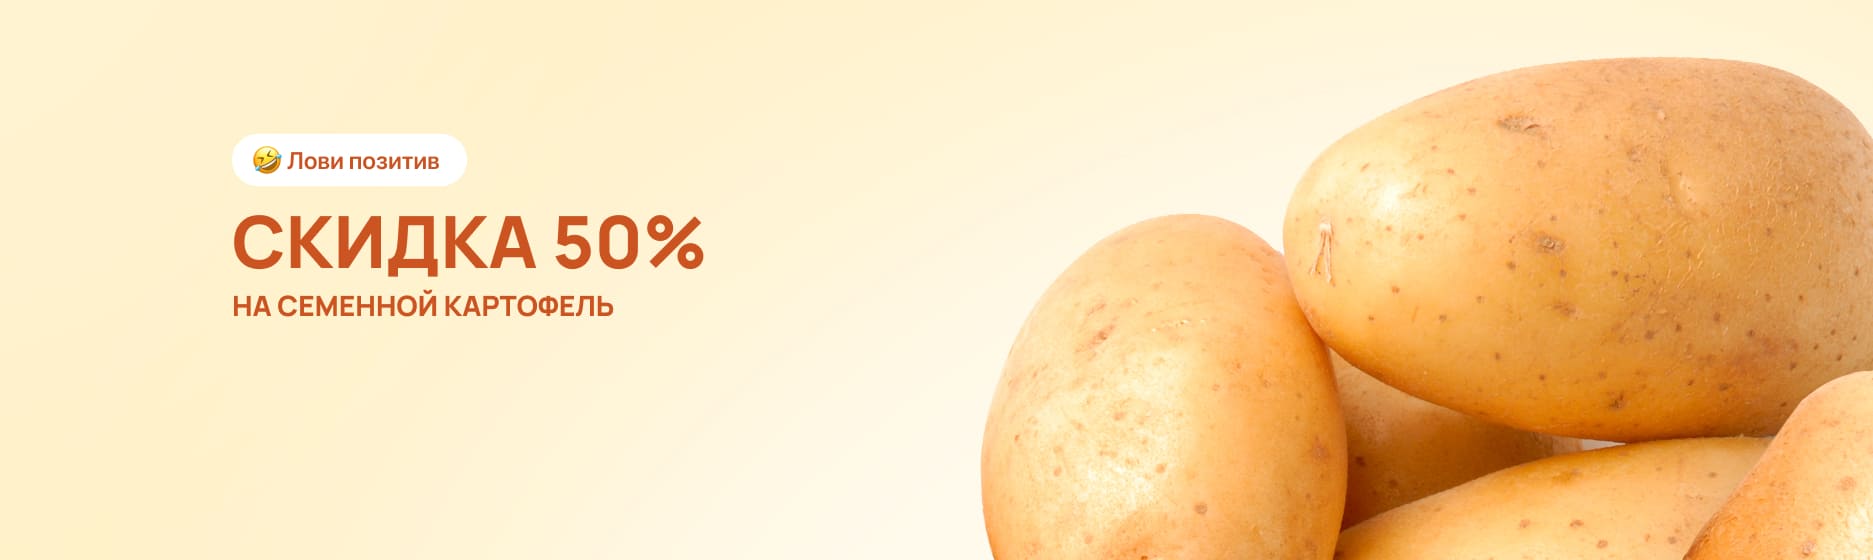 Семенной картофель со скидкой 50%